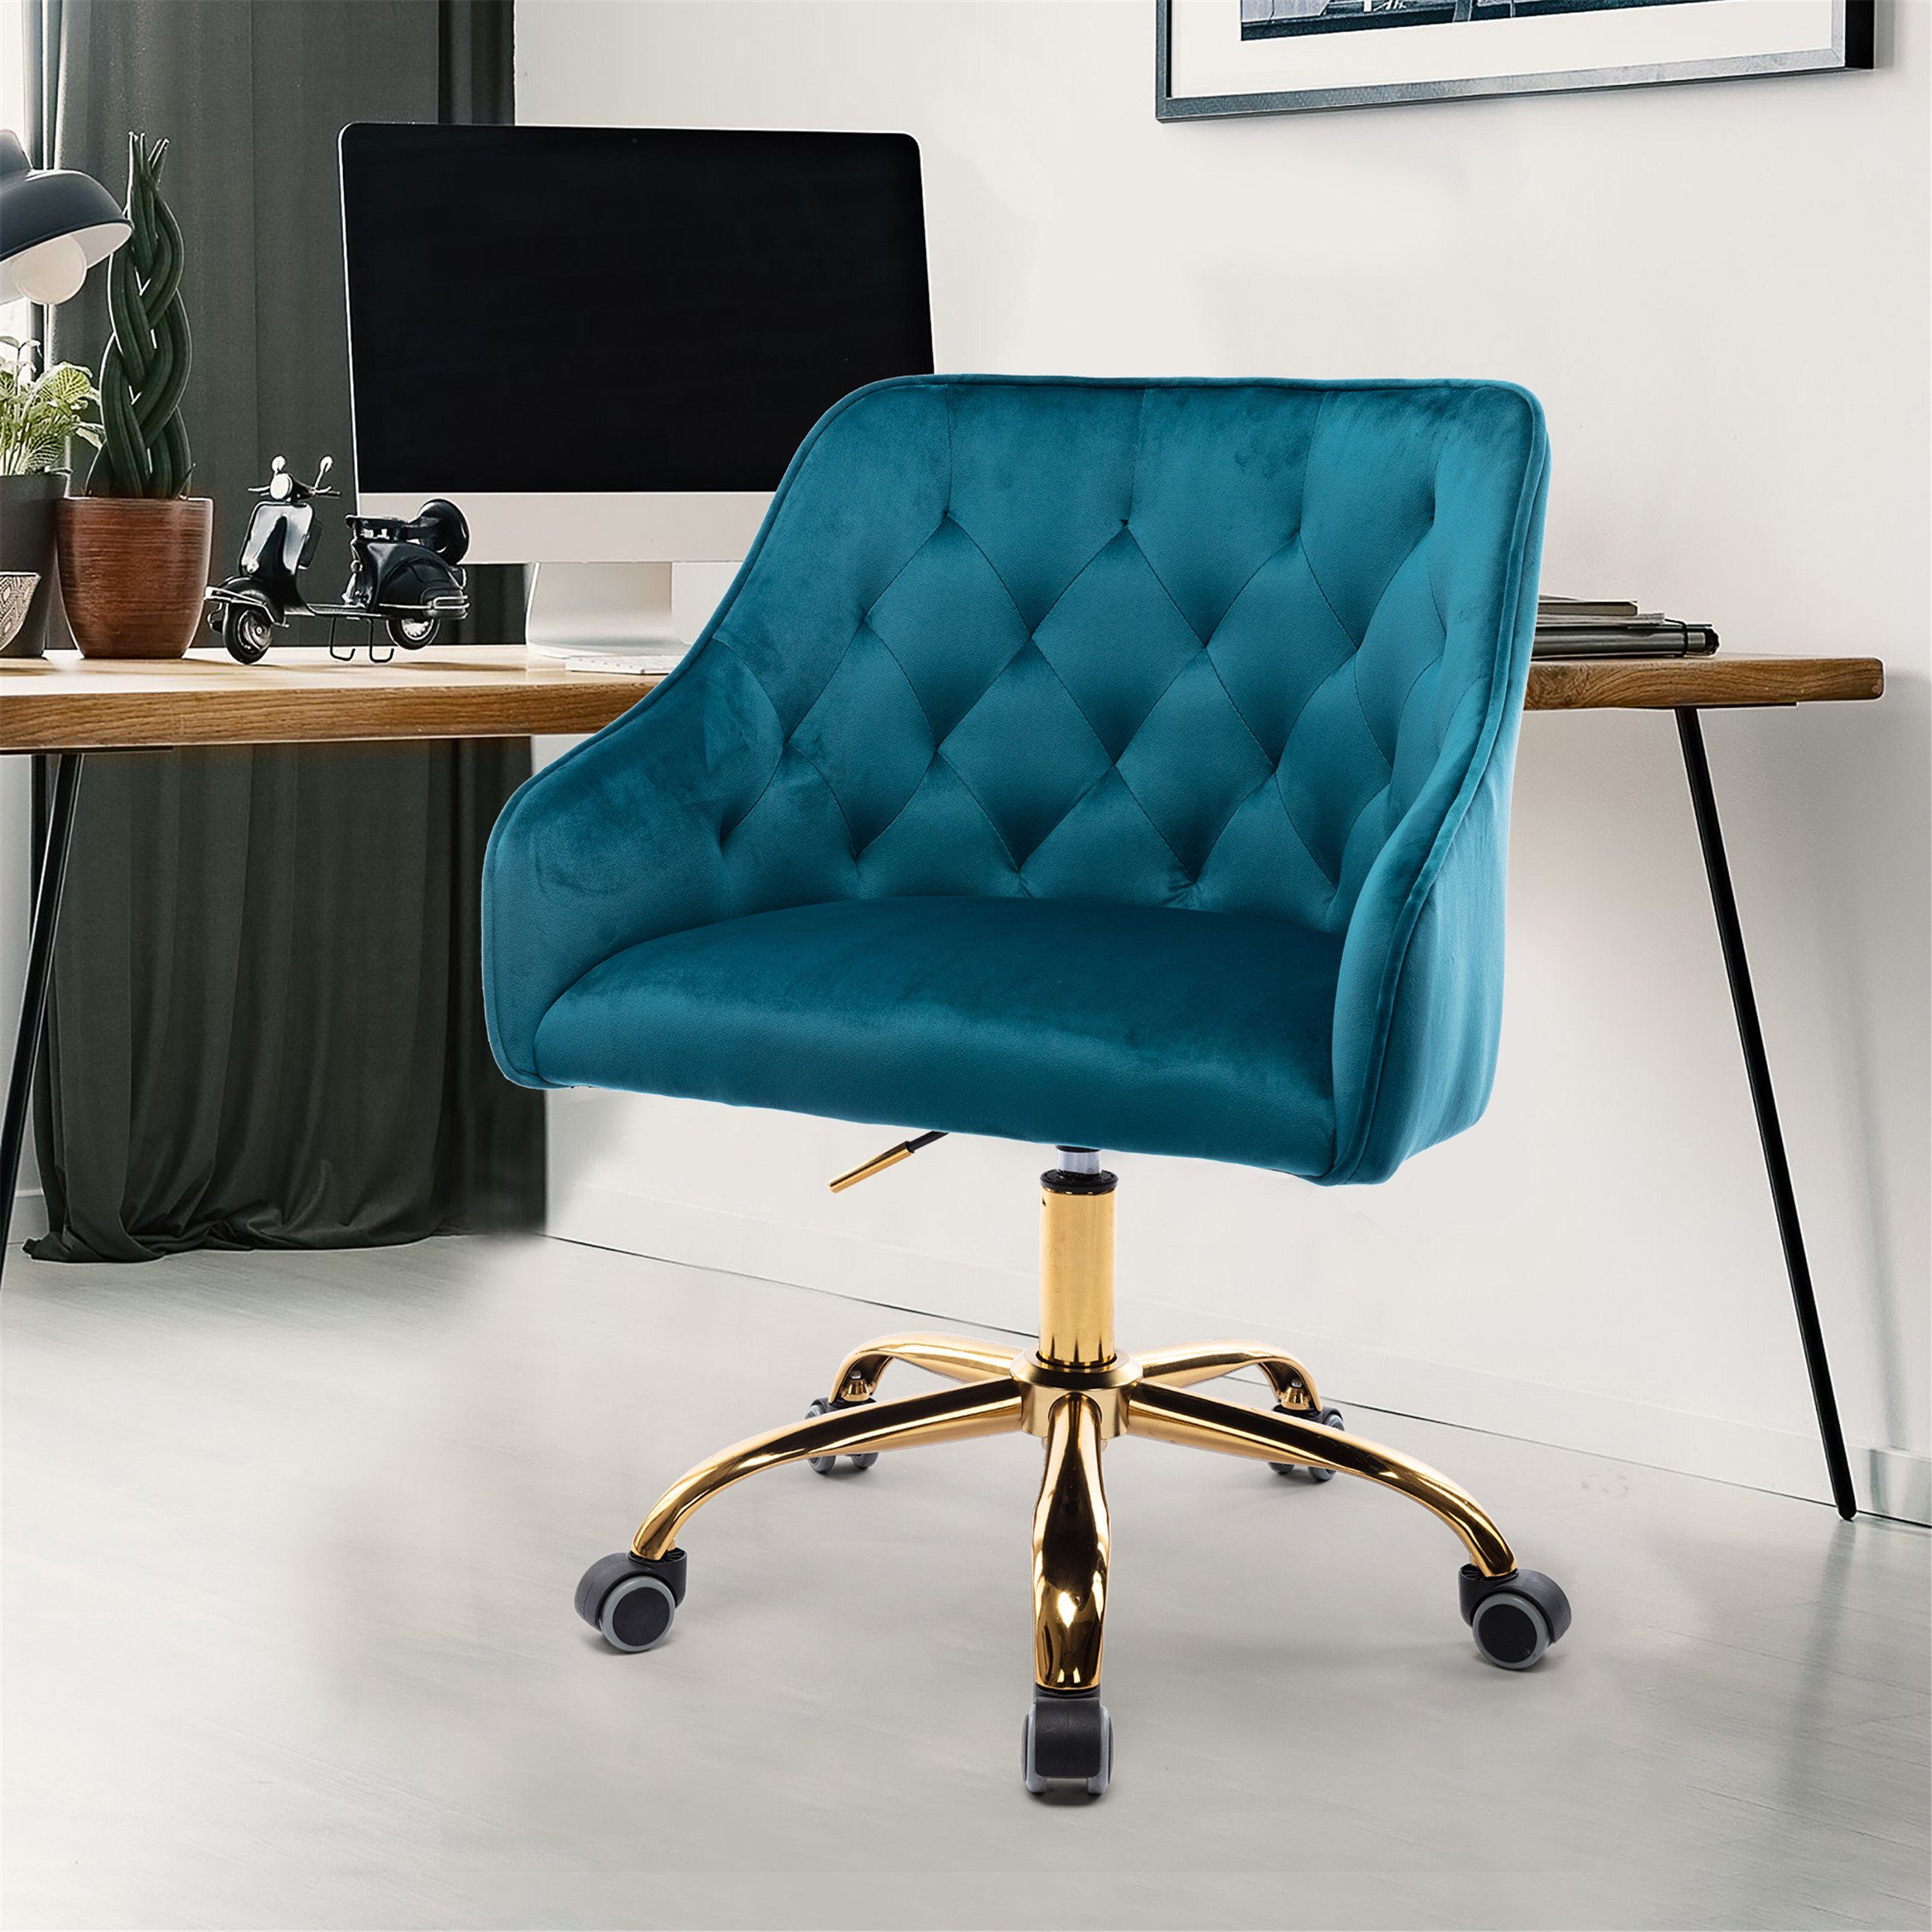 OKWISH Stuhl Samt Bürostuhl, Schminkstuhl, Stoff-Schreibtischstuhl (360° drehbar, höhenverstellbar), hübscher schicker Stuhl, goldener Bürostuhl natur